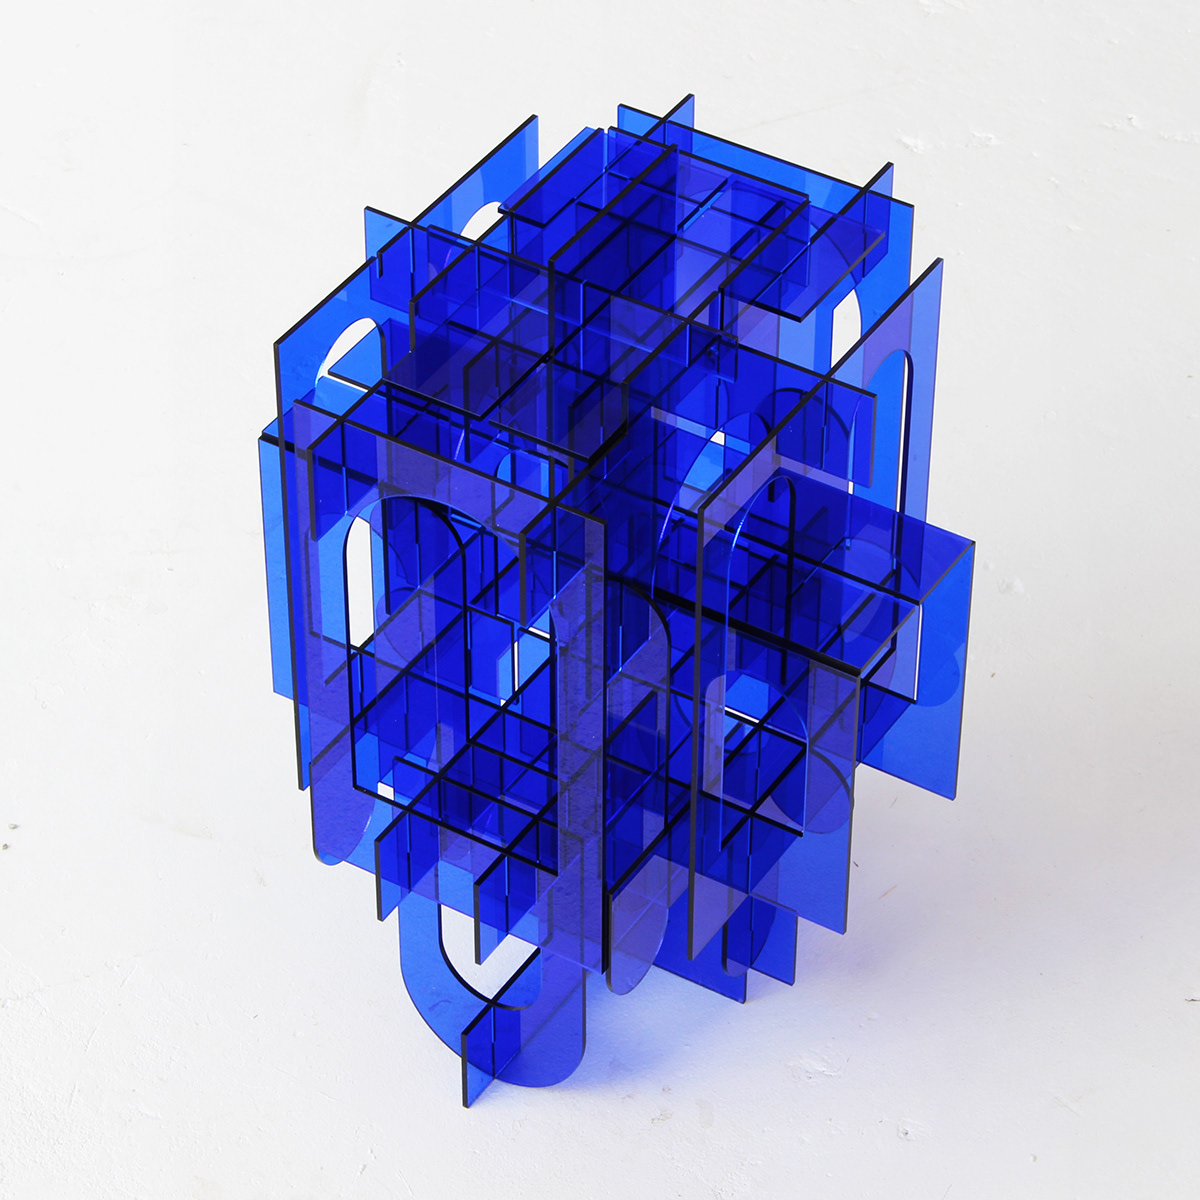 acrylic architectural blue glass plexi plixiglas sculpture tower transparent